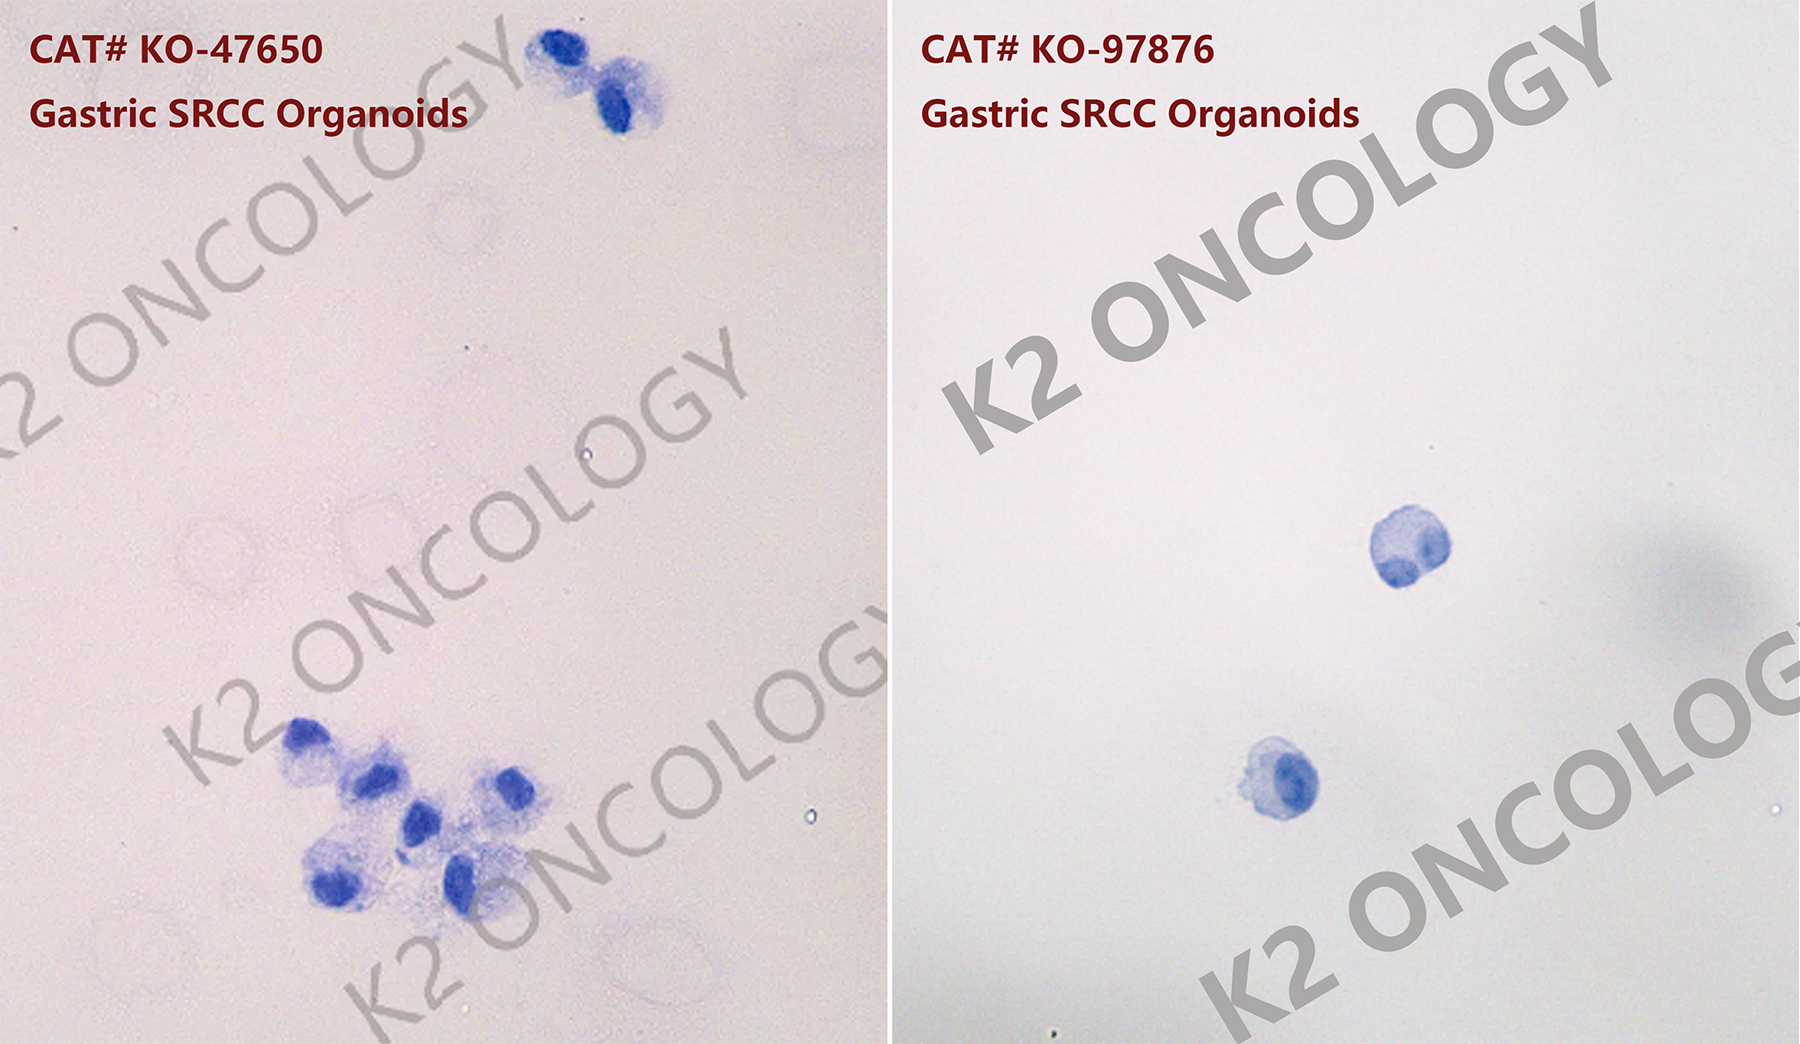 印戒细胞胃癌(SRCC)类器官模型的细胞染色照片.png